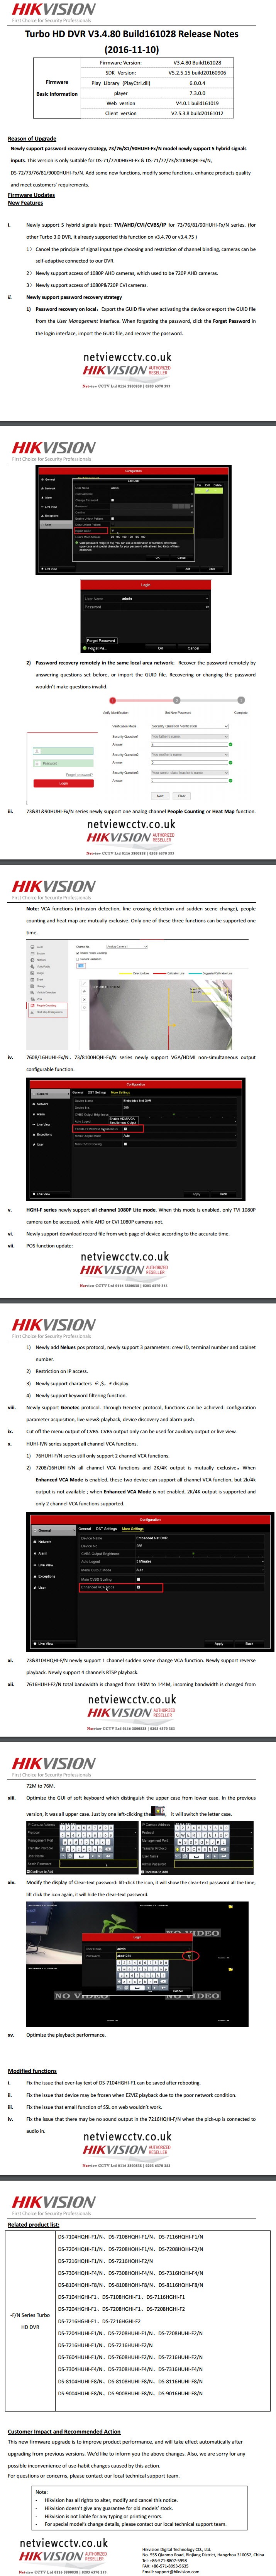 Hikvision Turbo HD DVR V3.4.80 Build161028 Release Notes